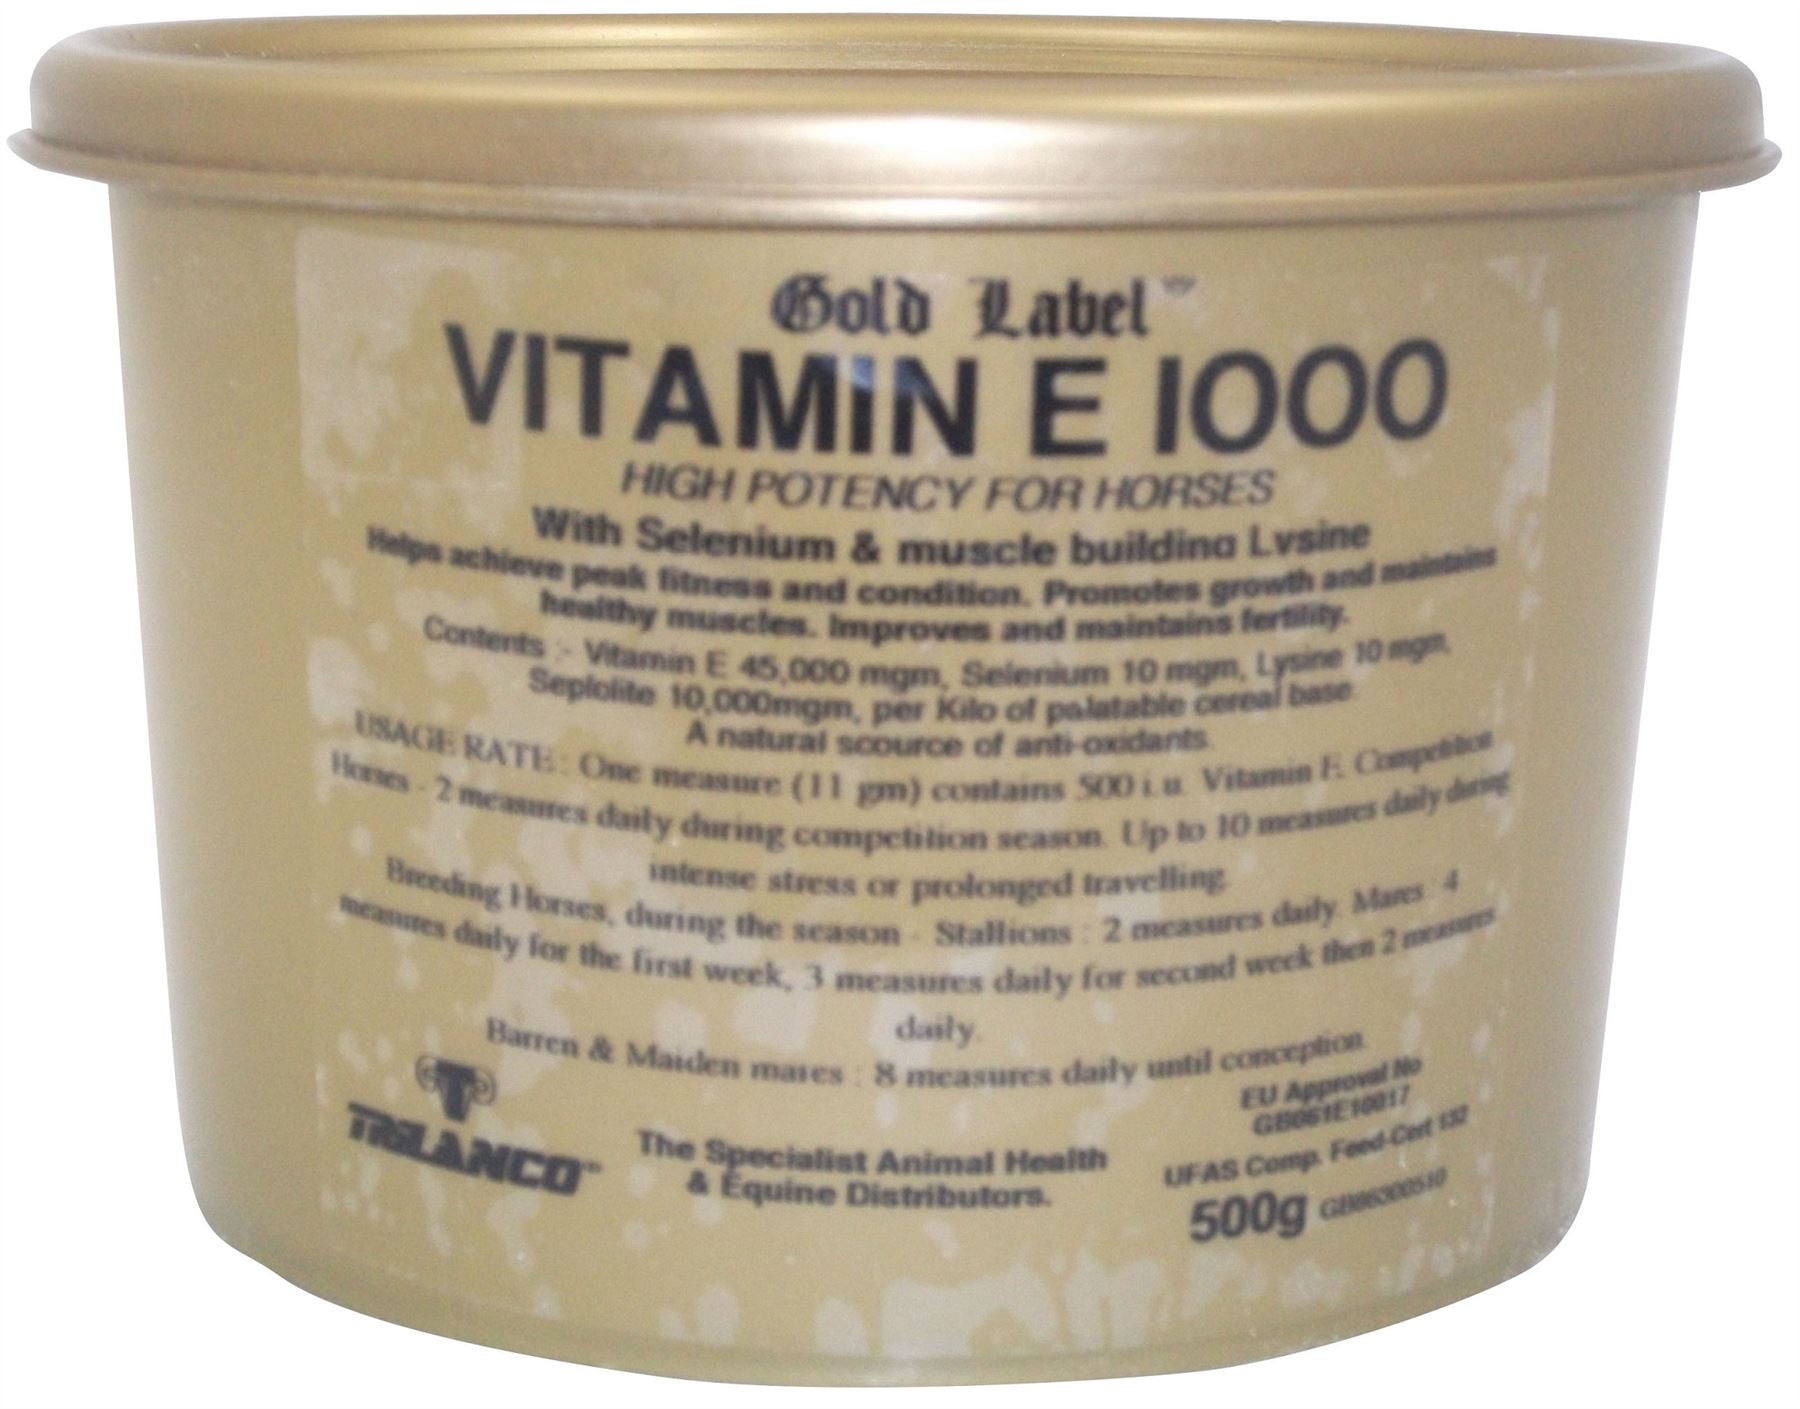 Gold Label Vitamin E 1000 - Just Horse Riders